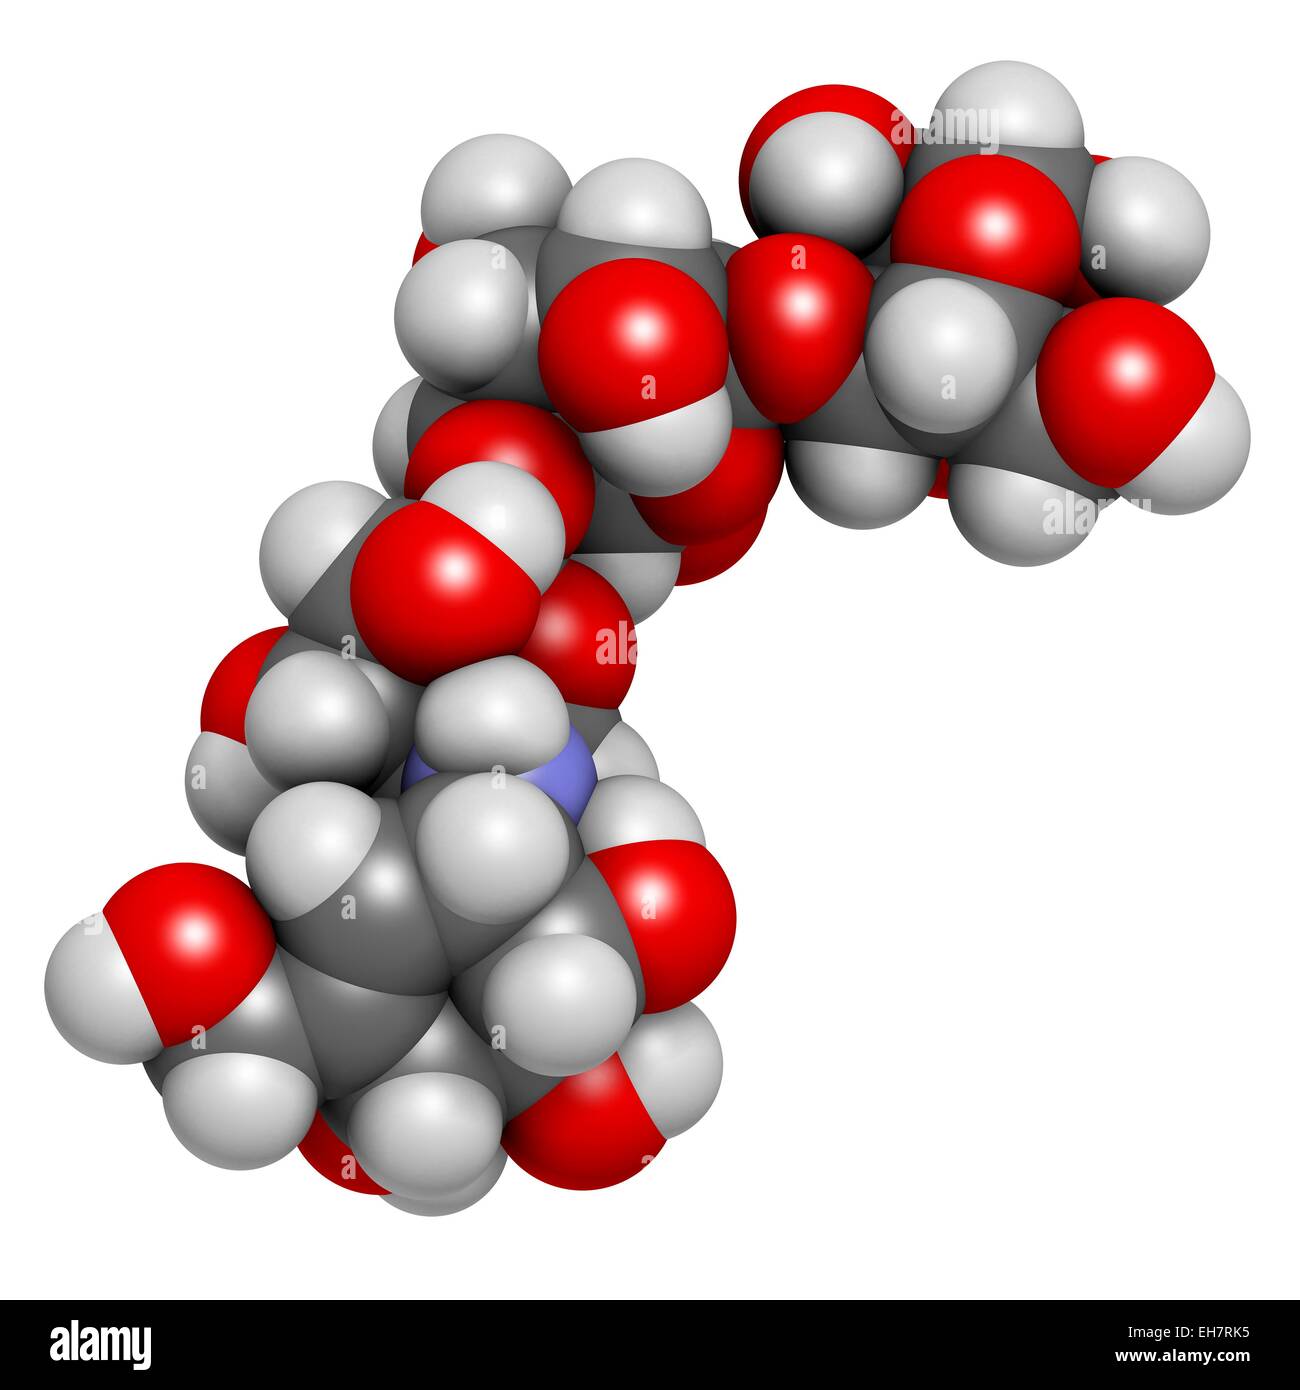 Acarbose Diabetes Wirkstoffmolekül. Chemische Formel ist C25H43NO18. Atome  werden als Kugeln dargestellt: Kohlenstoff (grau), Wasserstoff (weiß),  Stickstoff (blau), Sauerstoff (rot). Abbildung Stockfotografie - Alamy